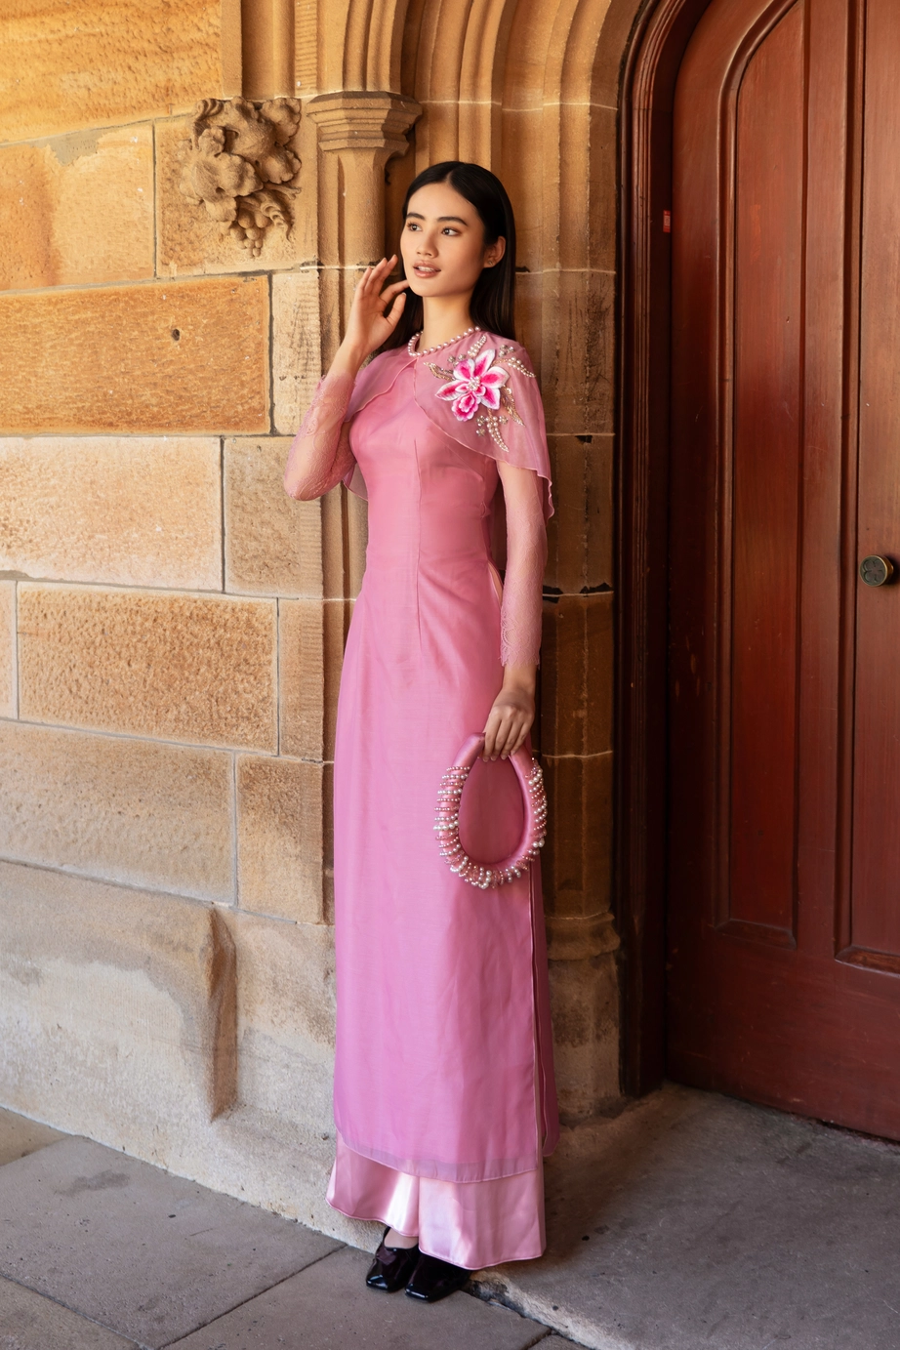  Hoa hậu Ý Nhi rạng rỡ trong tà áo dài tại Úc